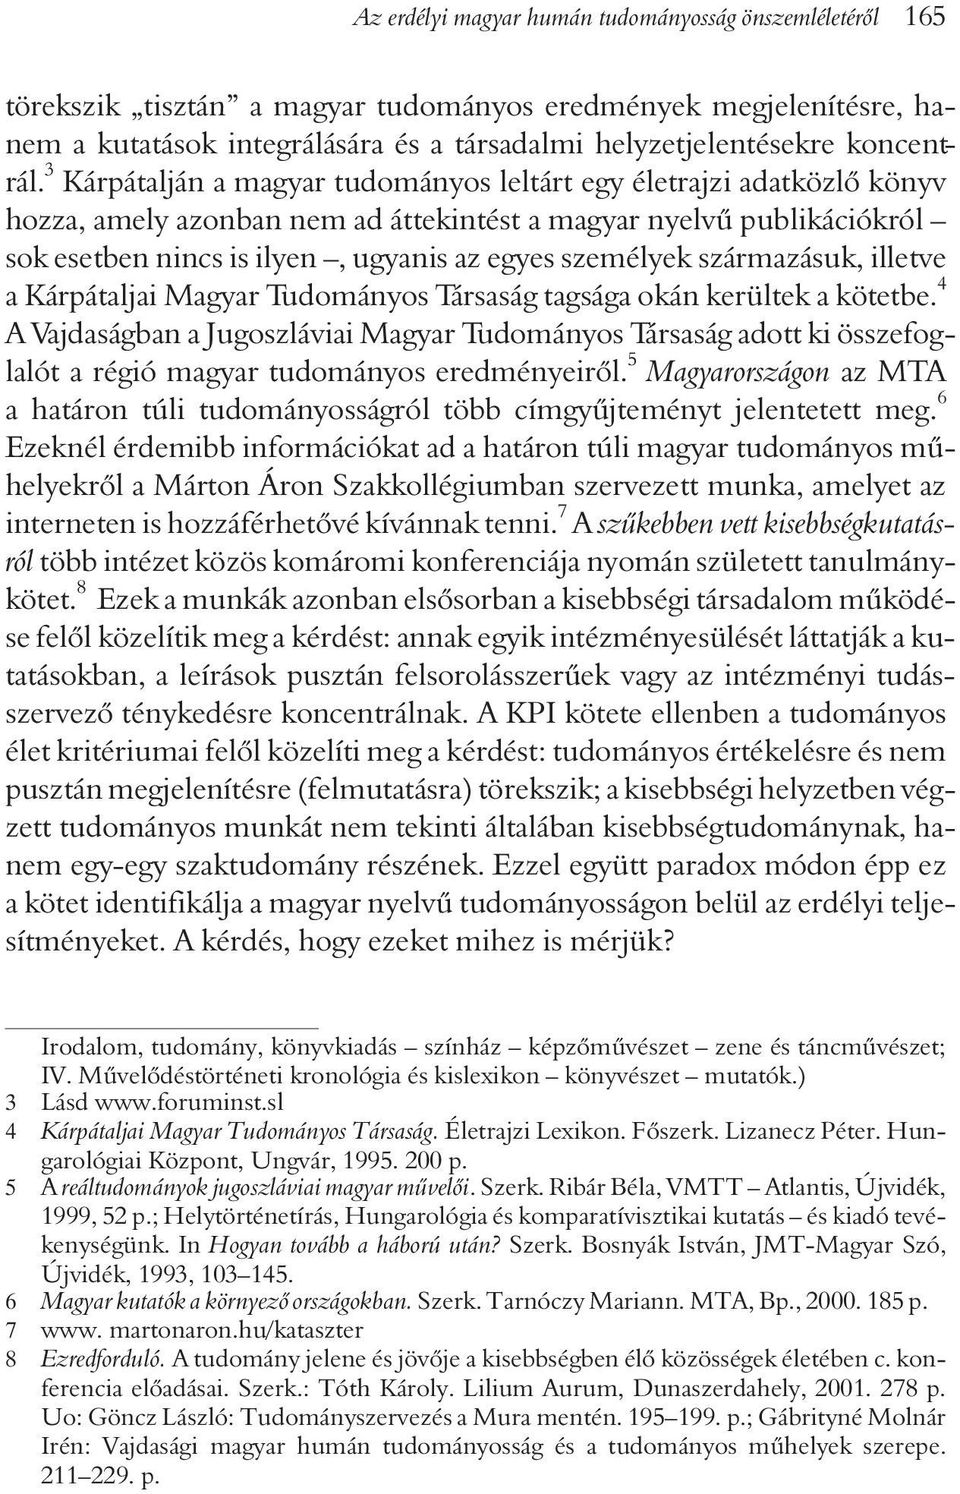 3 Kárpátalján a magyar tudományos leltárt egy életrajzi adatközlõ könyv hozza, amely azonban nem ad áttekintést a magyar nyelvû publikációkról sok esetben nincs is ilyen, ugyanis az egyes személyek